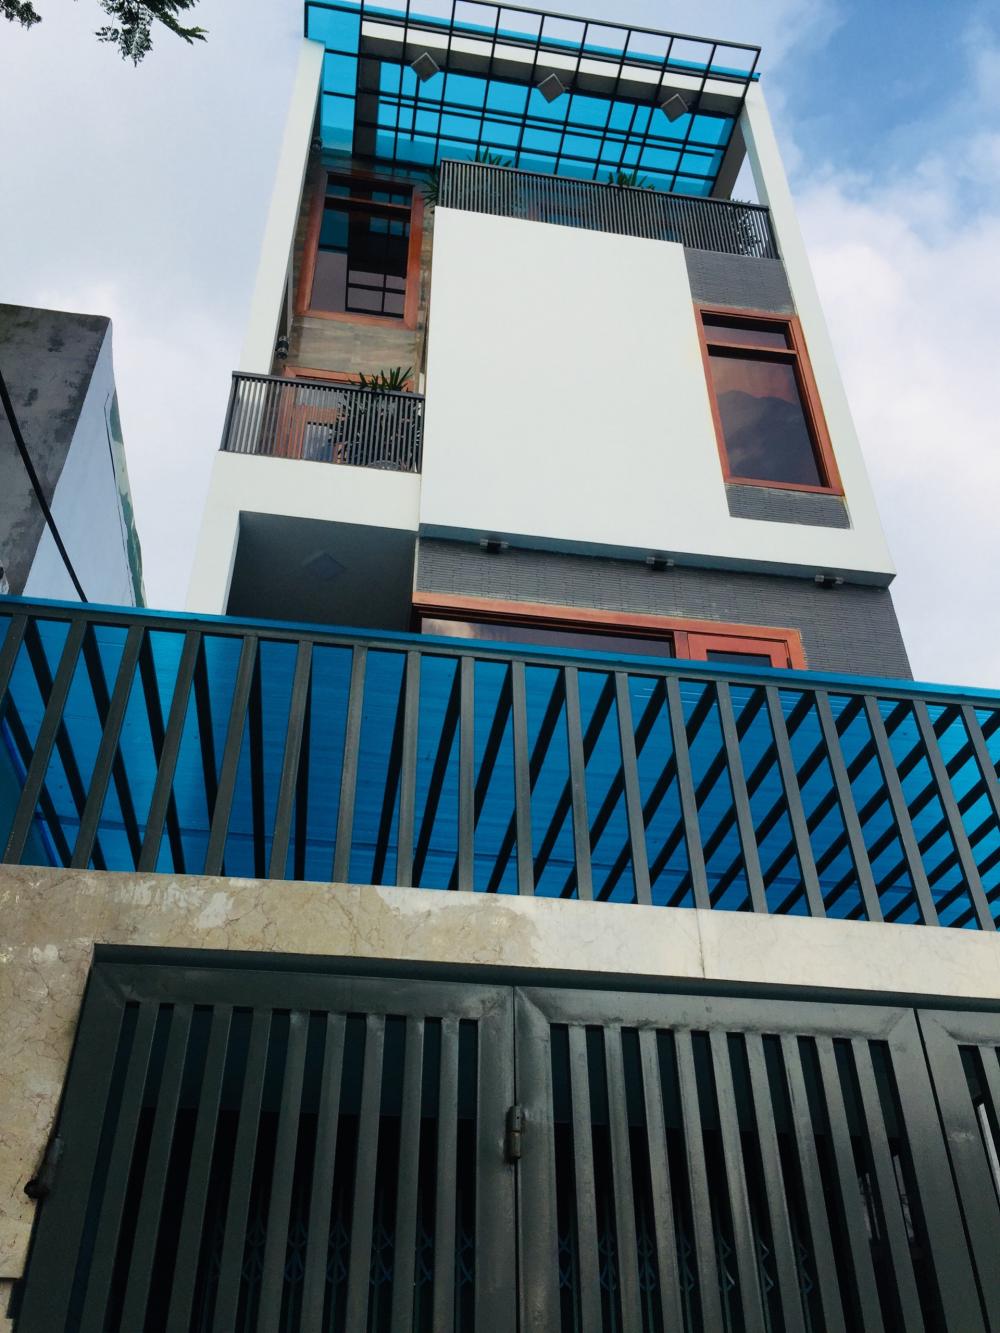 Bán nhà siêu đẹp 4 tầng, mới 100% chất lượng cao khu Hoà Minh, đường 7,5m, giá 4 tỷ